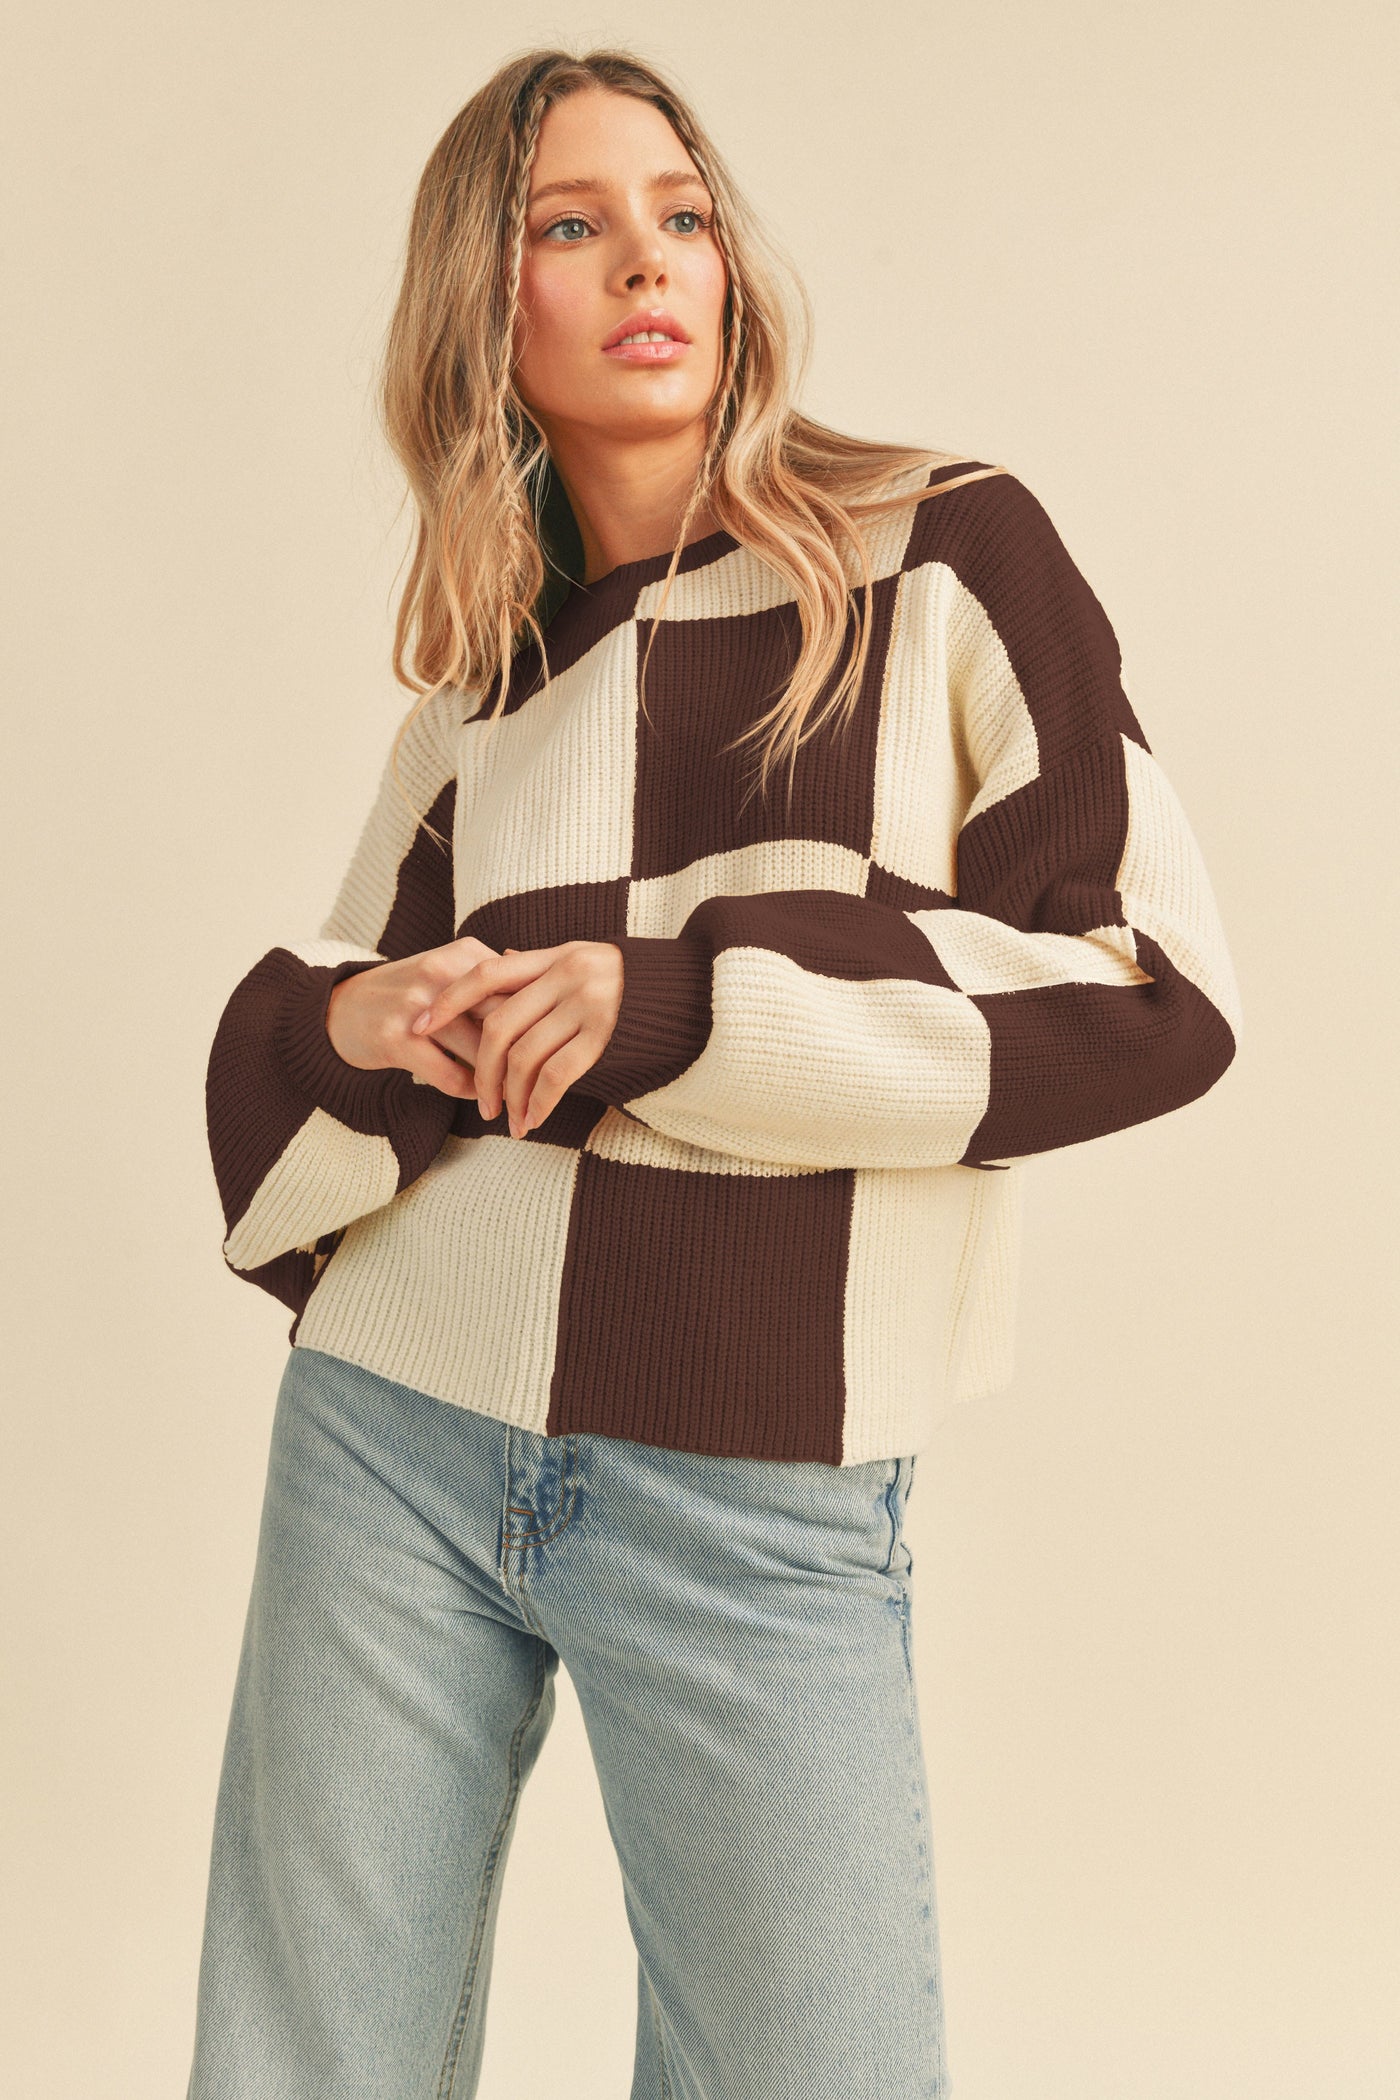 The Vana Checkered Sweater